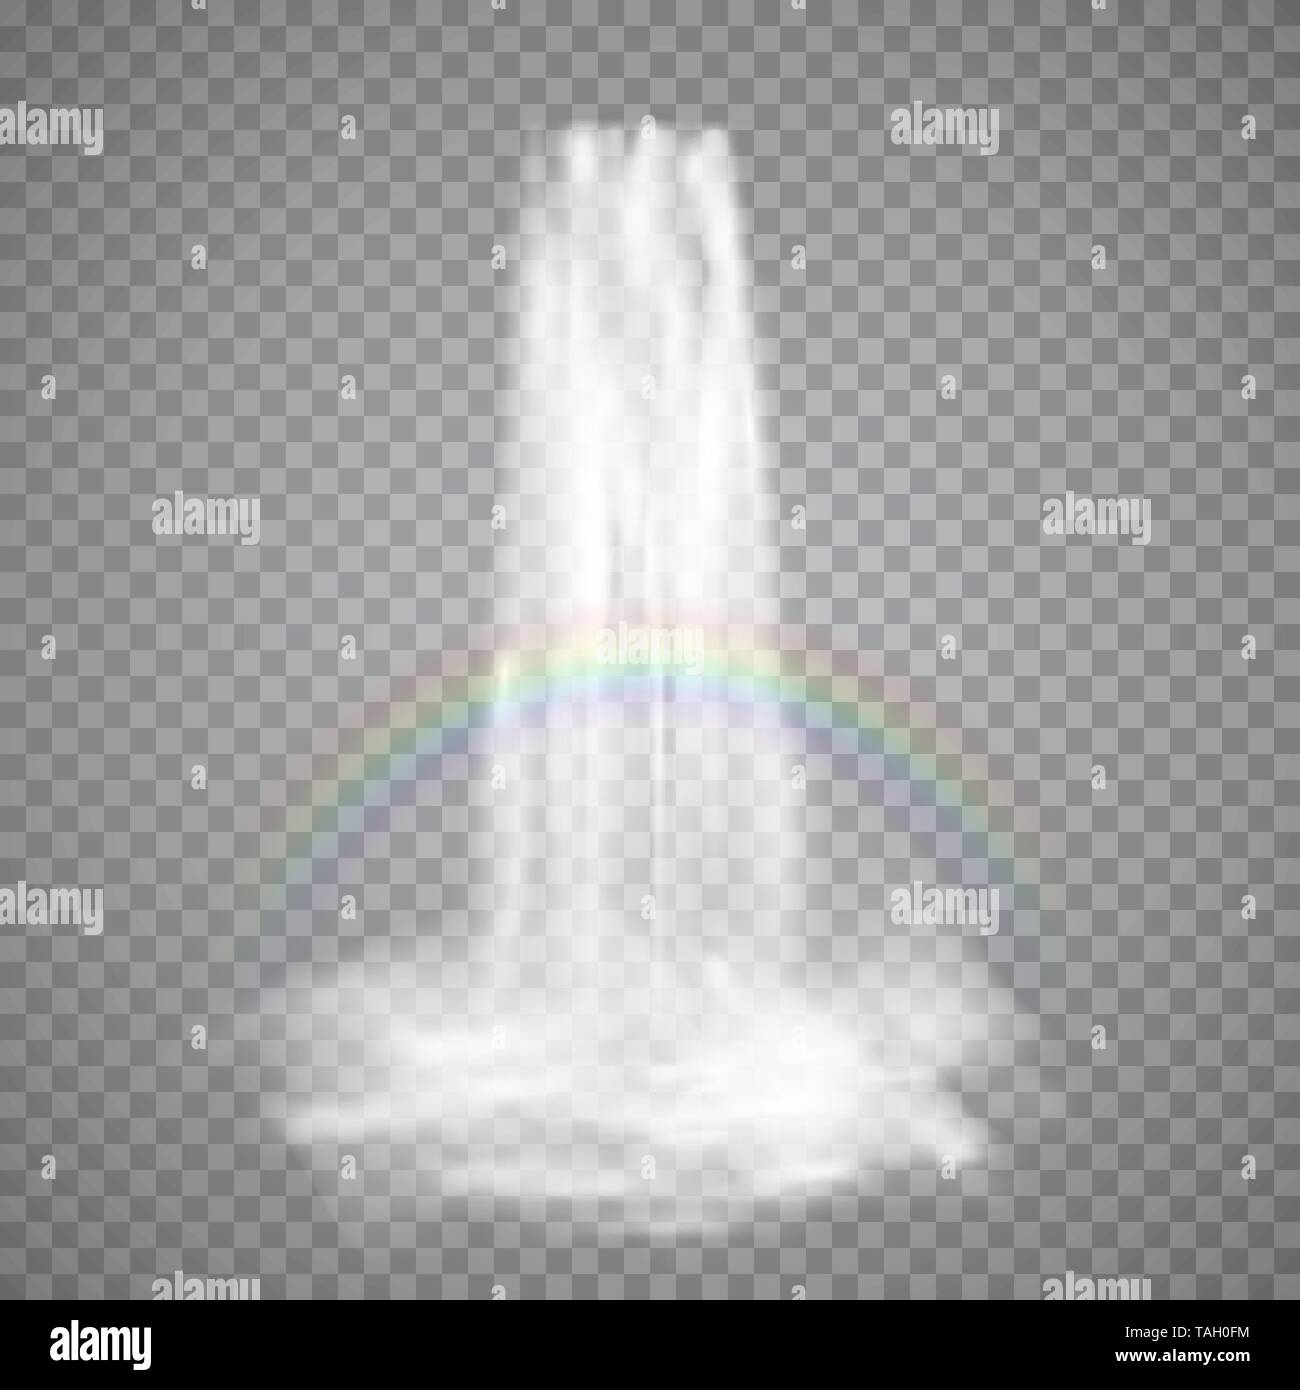 Carattere realistico flusso di cascata con acqua chiara arcobaleno e nebbia. Illustrazione di vettore isolato su sfondo trasparente Illustrazione Vettoriale